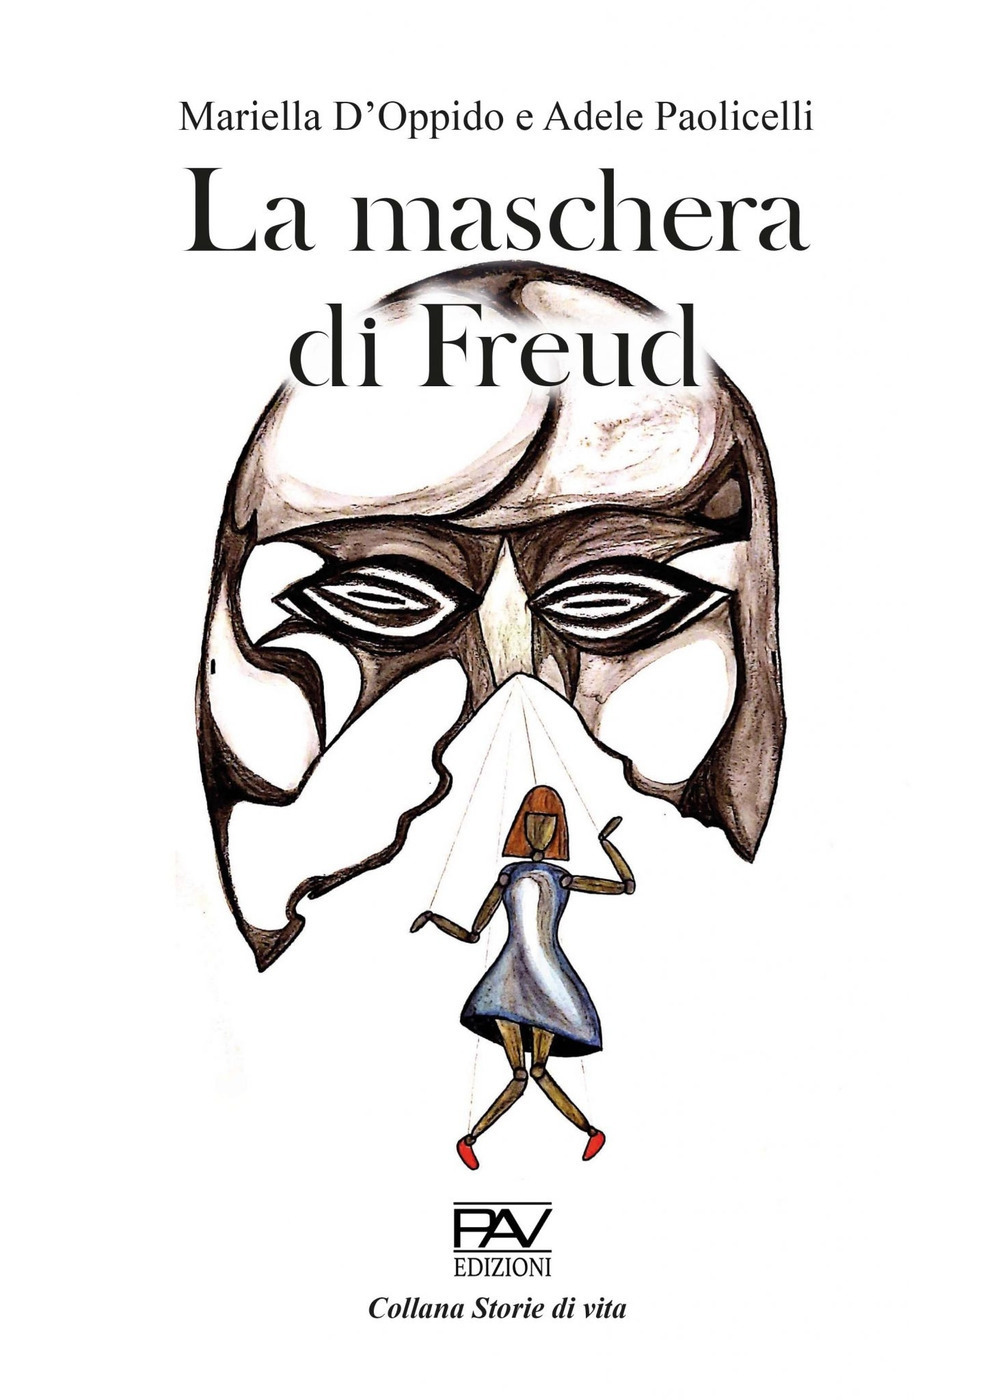 La maschera di Freud